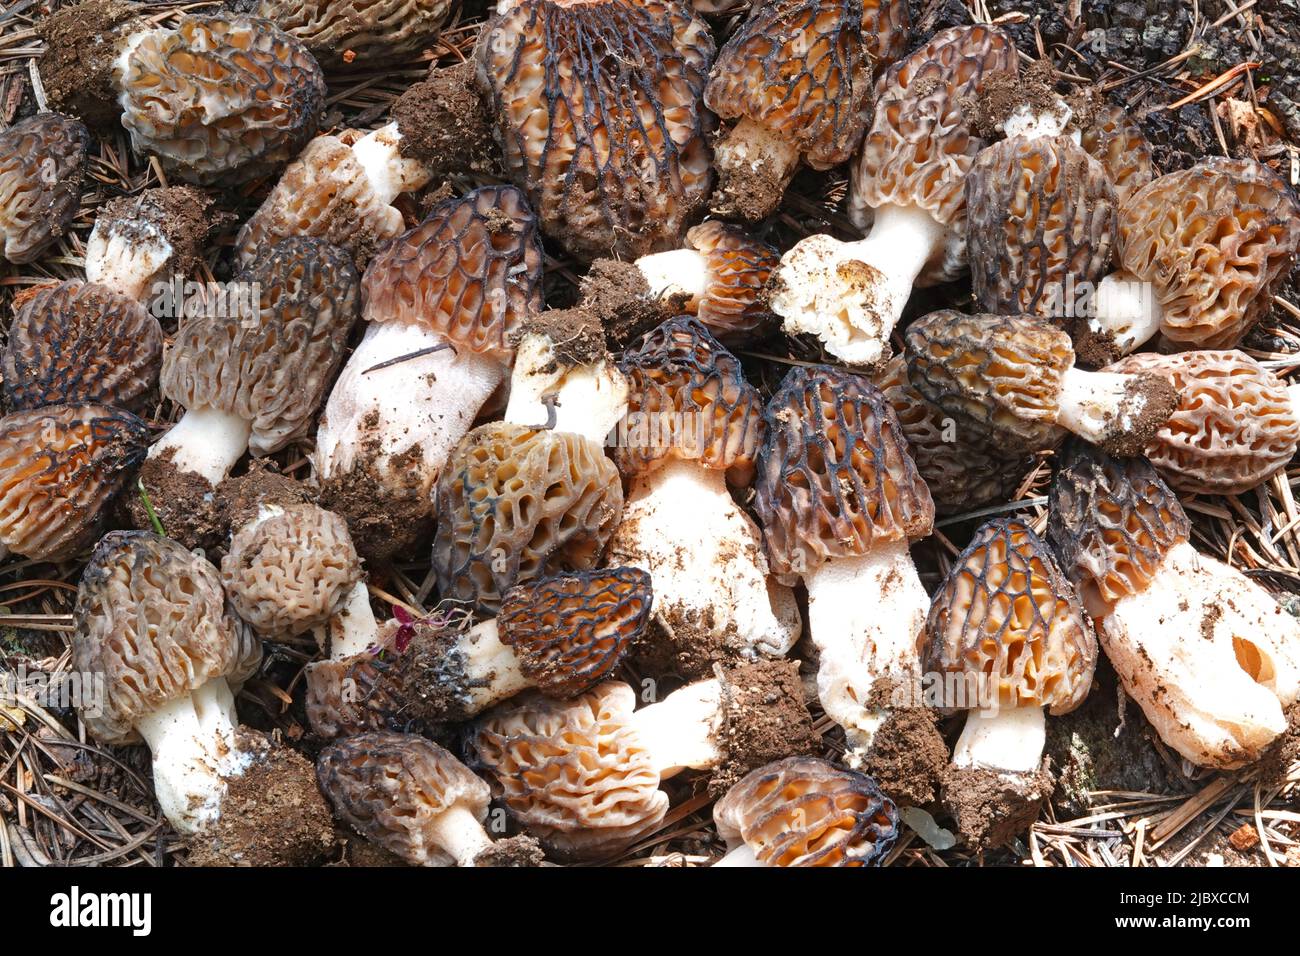 Un panier de morilles fraîches, l'un des champignons sauvages les plus comestibles du monde. Banque D'Images